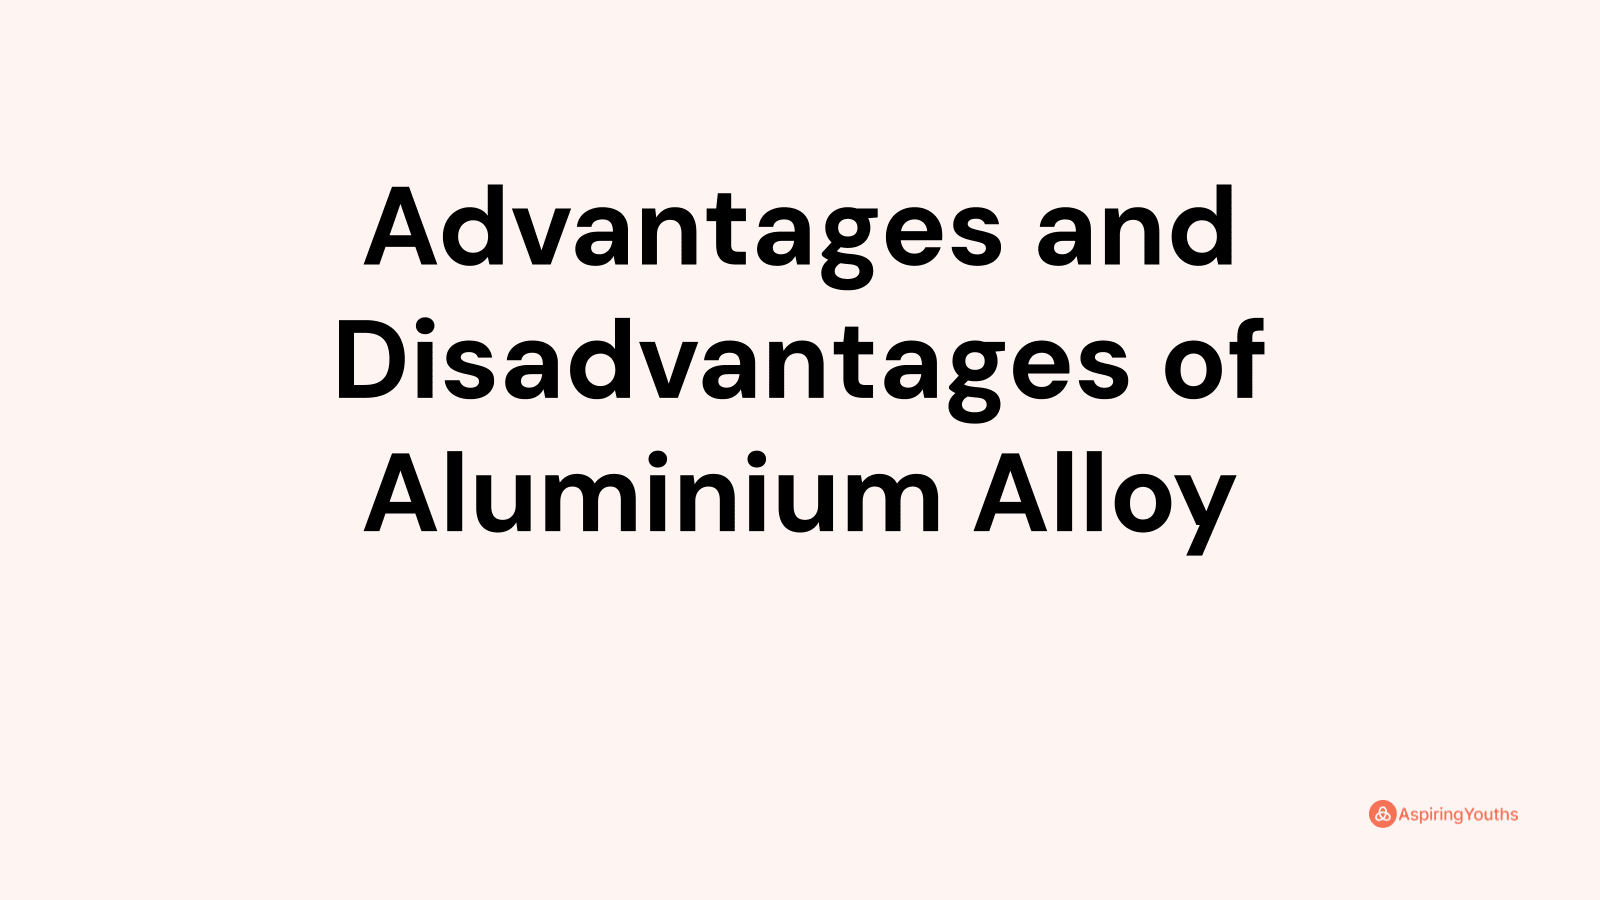 Advantages and disadvantages of Aluminium Alloy